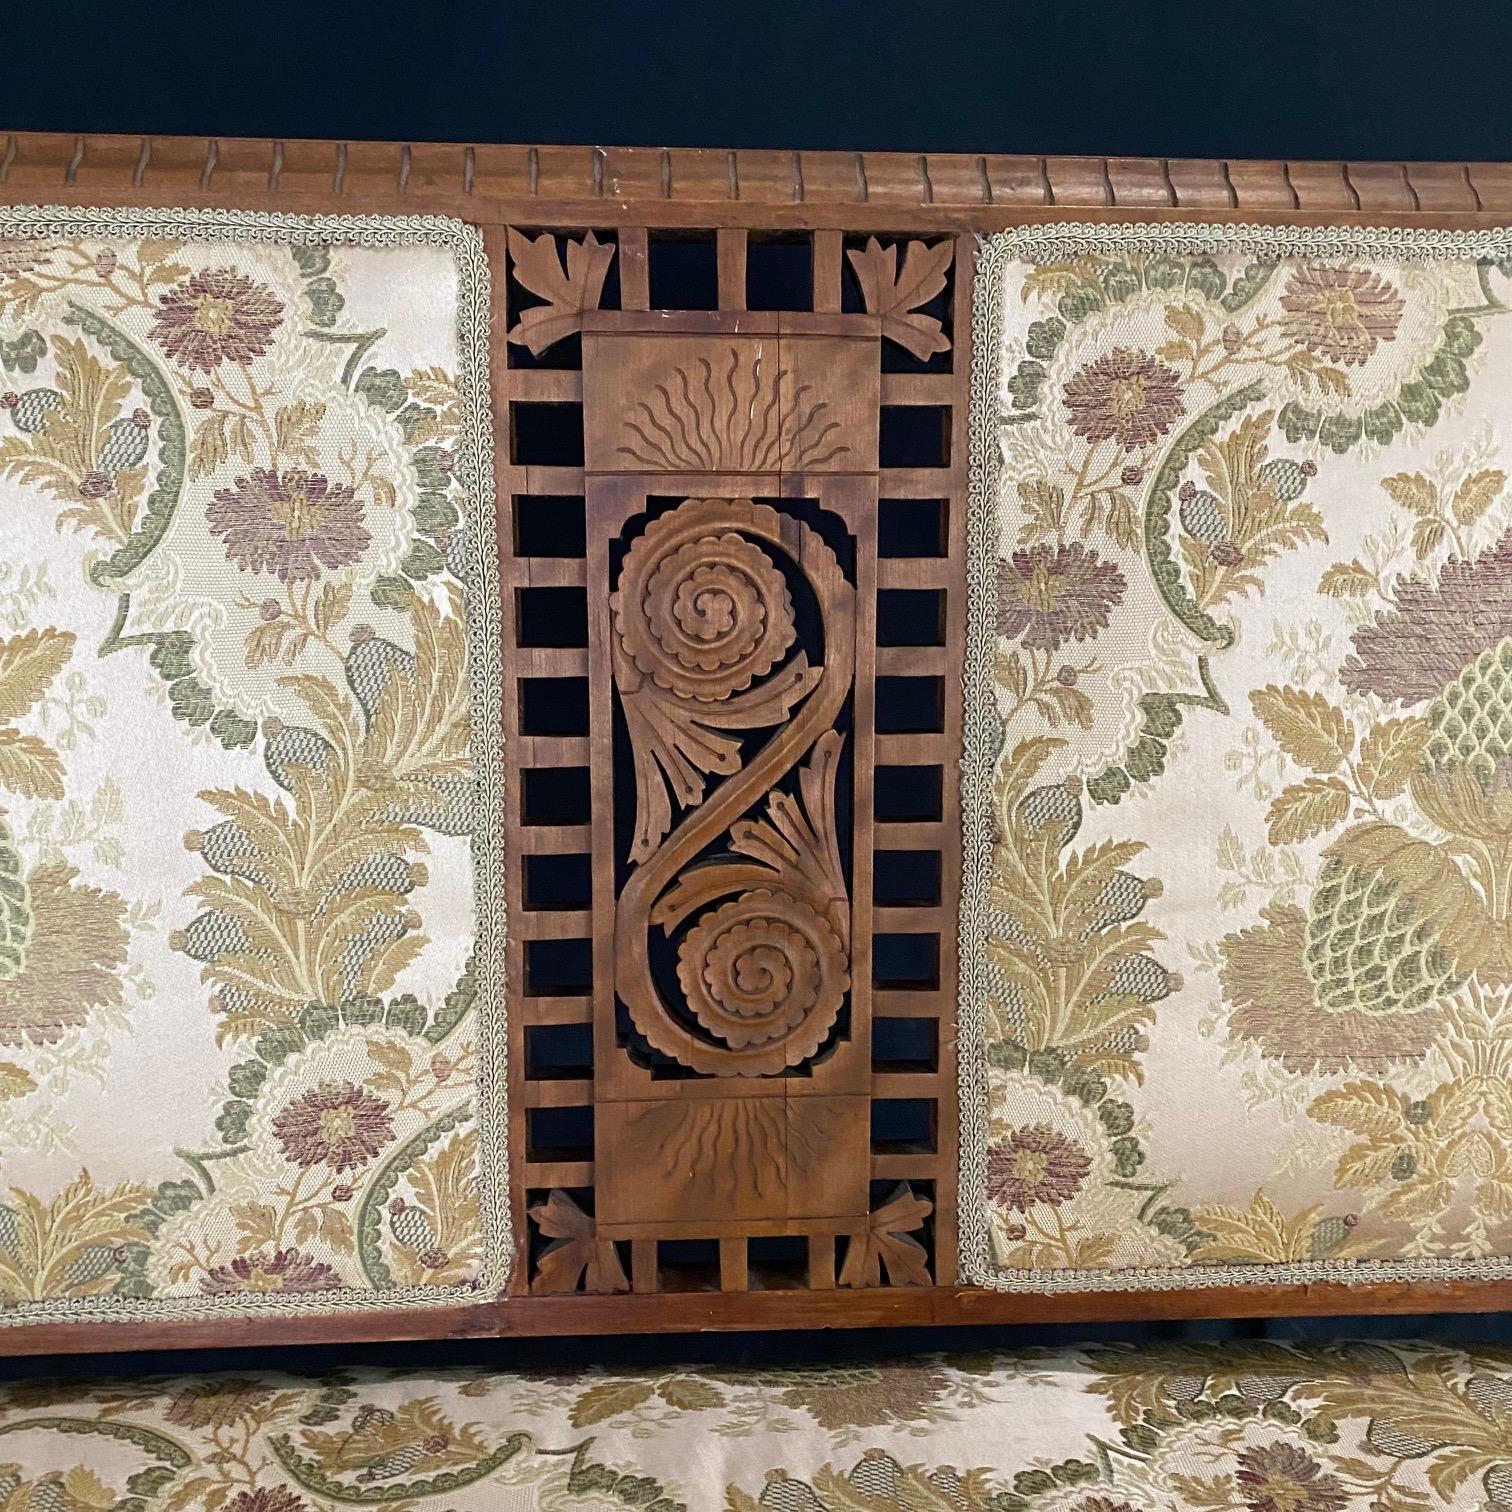 Ein Sofa aus der Eastlake-Periode, das in der Mitte mit einer beeindruckenden durchbrochenen Krone versehen ist  mit einem durchbrochenen floralen Motiv, dessen Form sich in den Armgiebeln widerspiegelt. Die schönen, nach außen gerollten Armlehnen